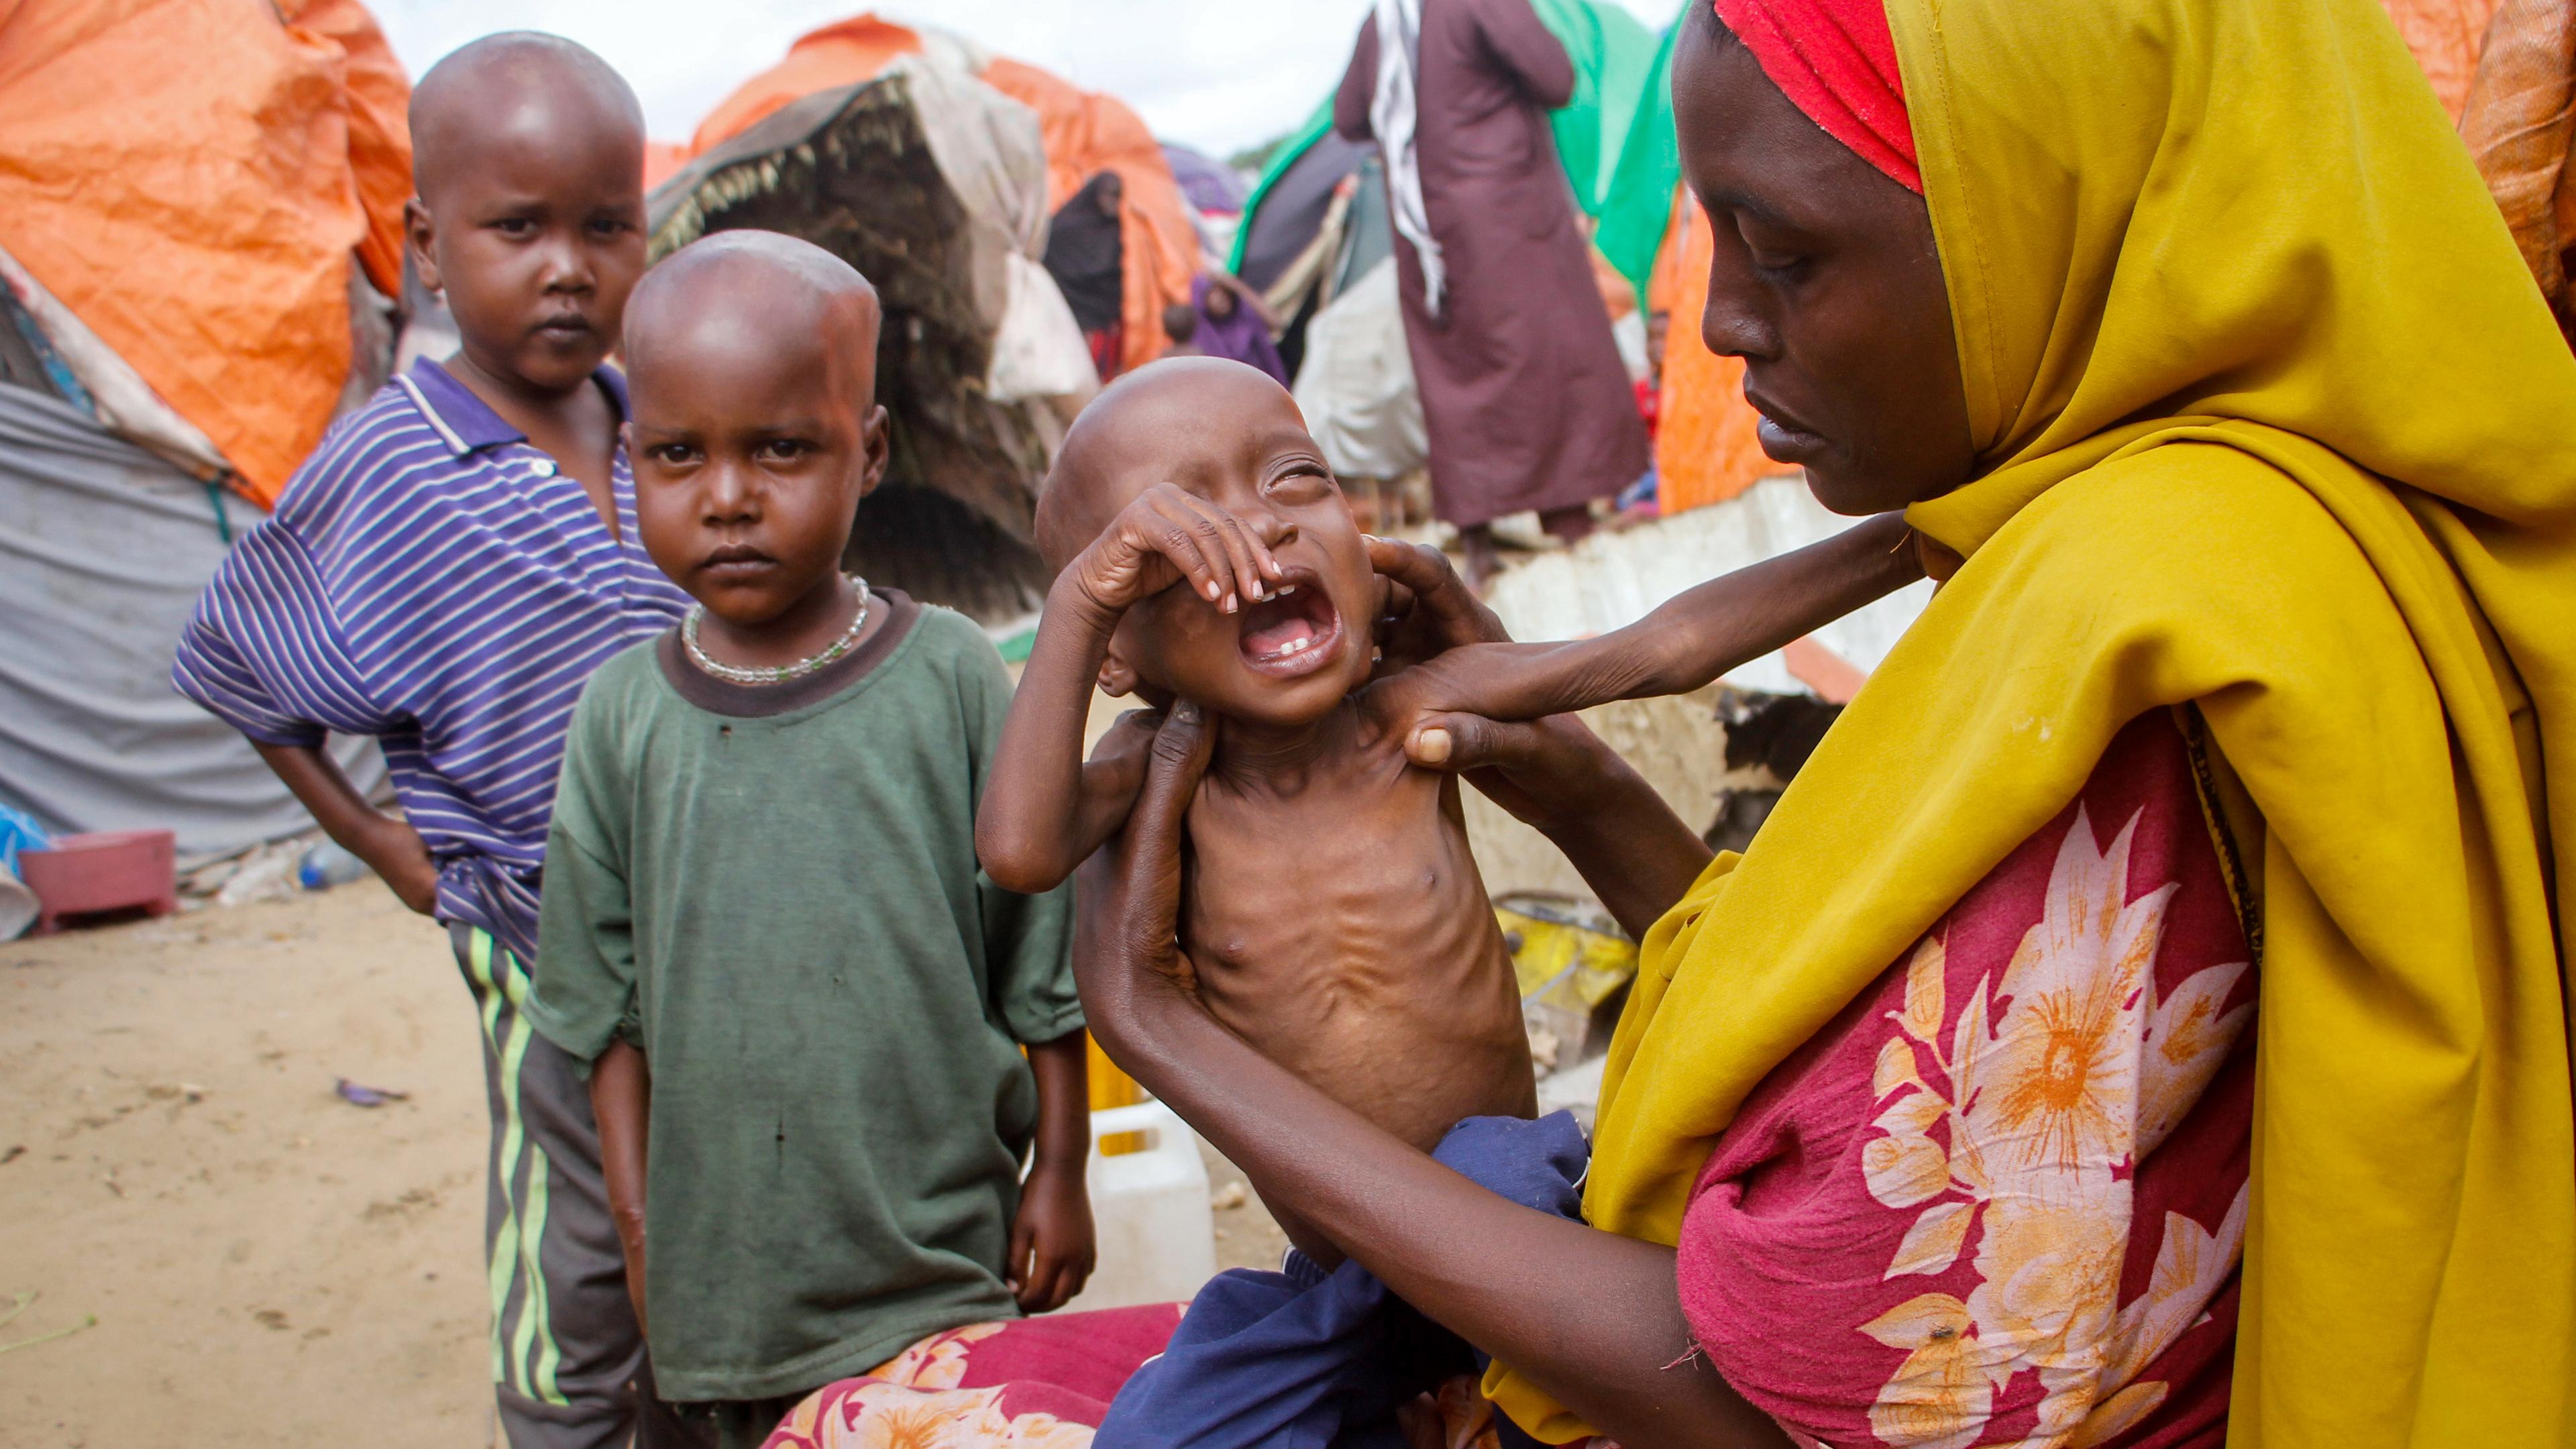 Eine Mutter in Somalia hält ihr schreiendes, unternernährtes Kind in den Armen. Neben ihr stehen zwei weitere, dünne Kinder, im Hintergrund sind Zelte zu sehen. (Archivbild)